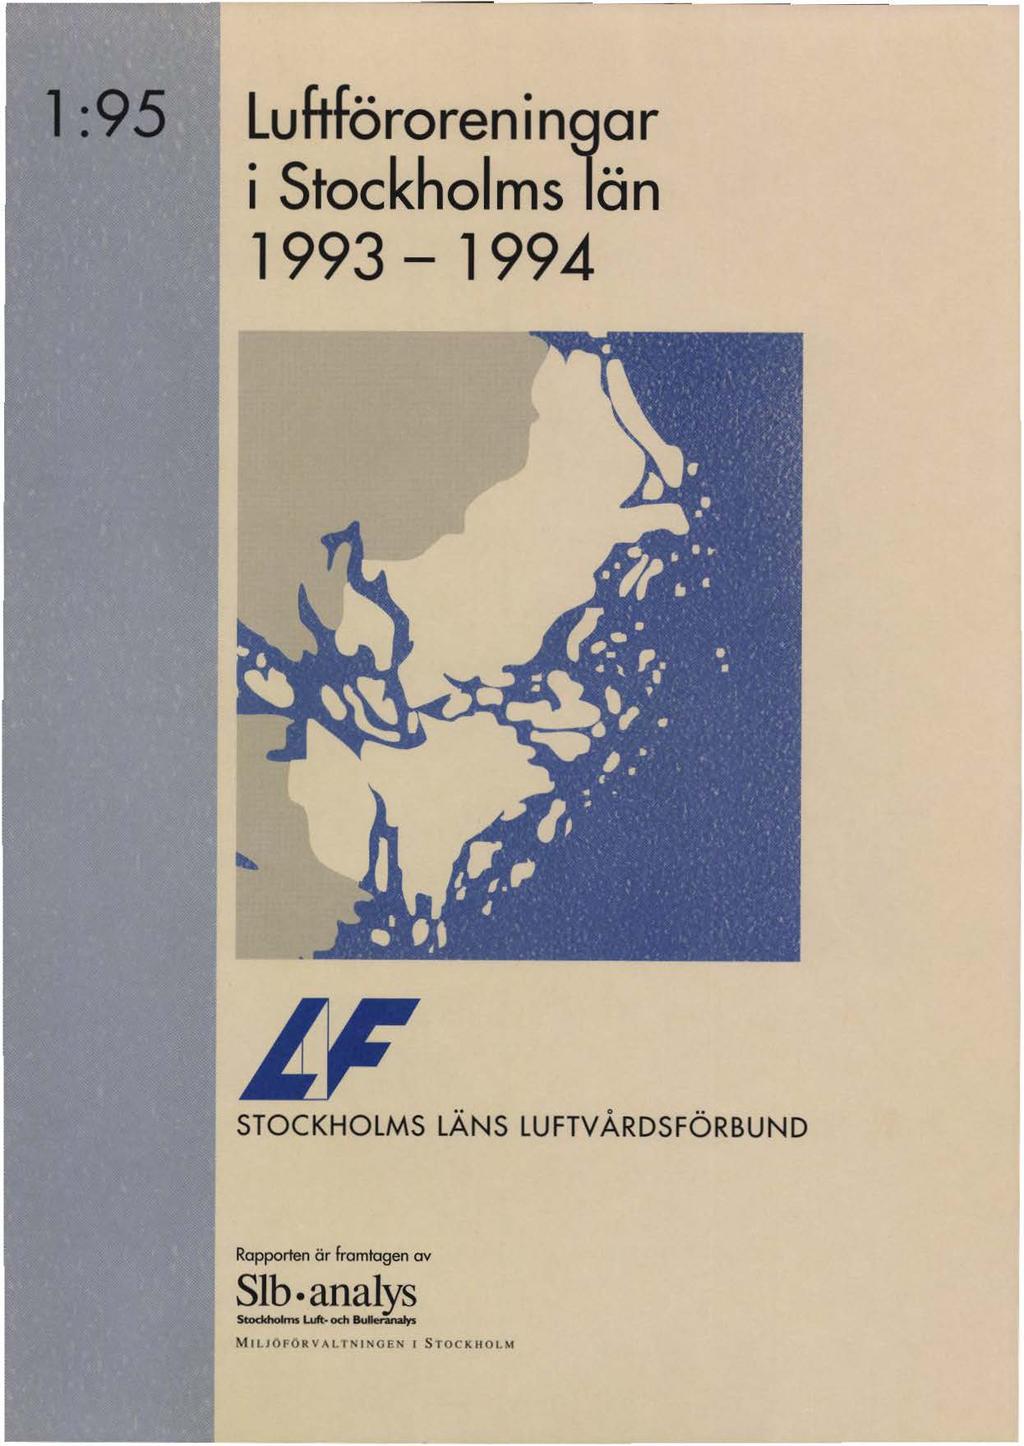 l :95 Luftföroreningar i Stockholms län 1993-1994 STOCKHOLMS LÄNS LUFTV ÅRDSFÖRBUND Rapporten